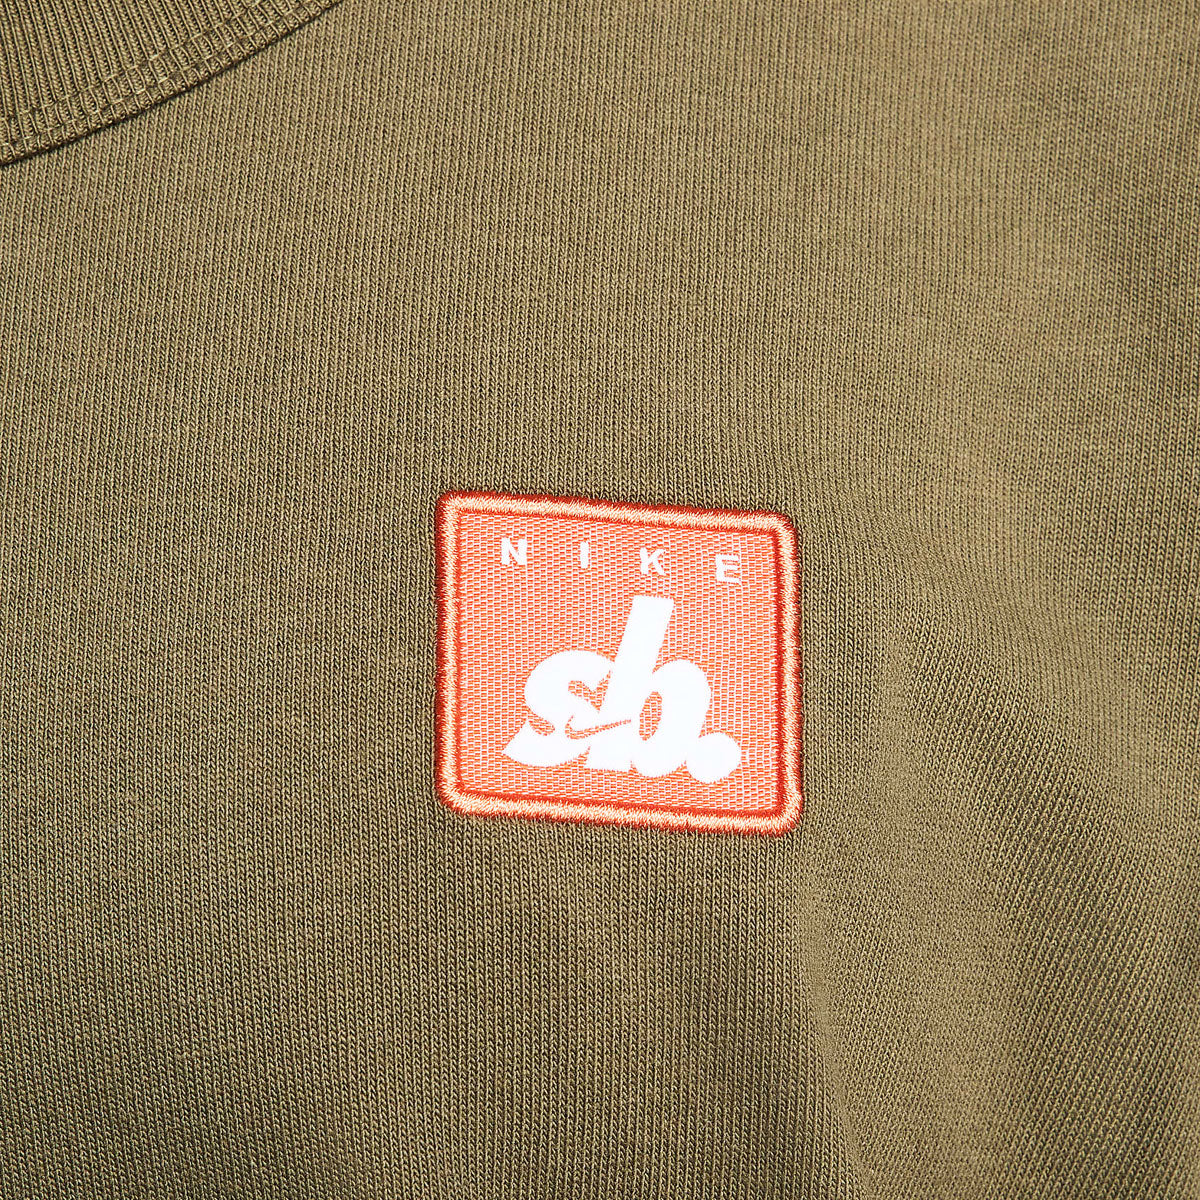 Nike SB Skate T-Shirt - Medium Olive image 3